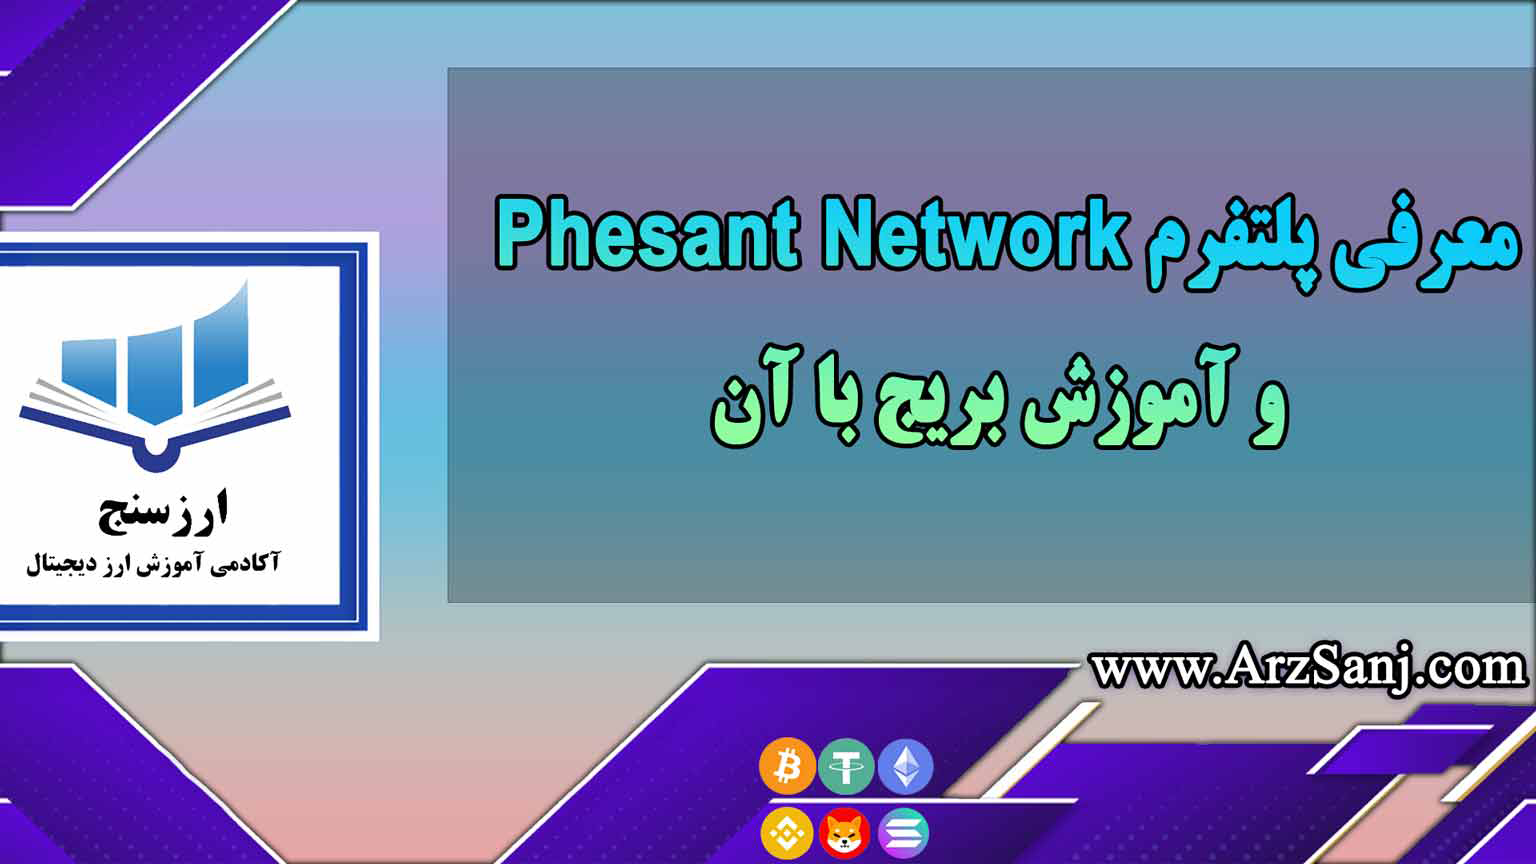 معرفی پلتفرم Phesant Network و آموزش بریج با آن